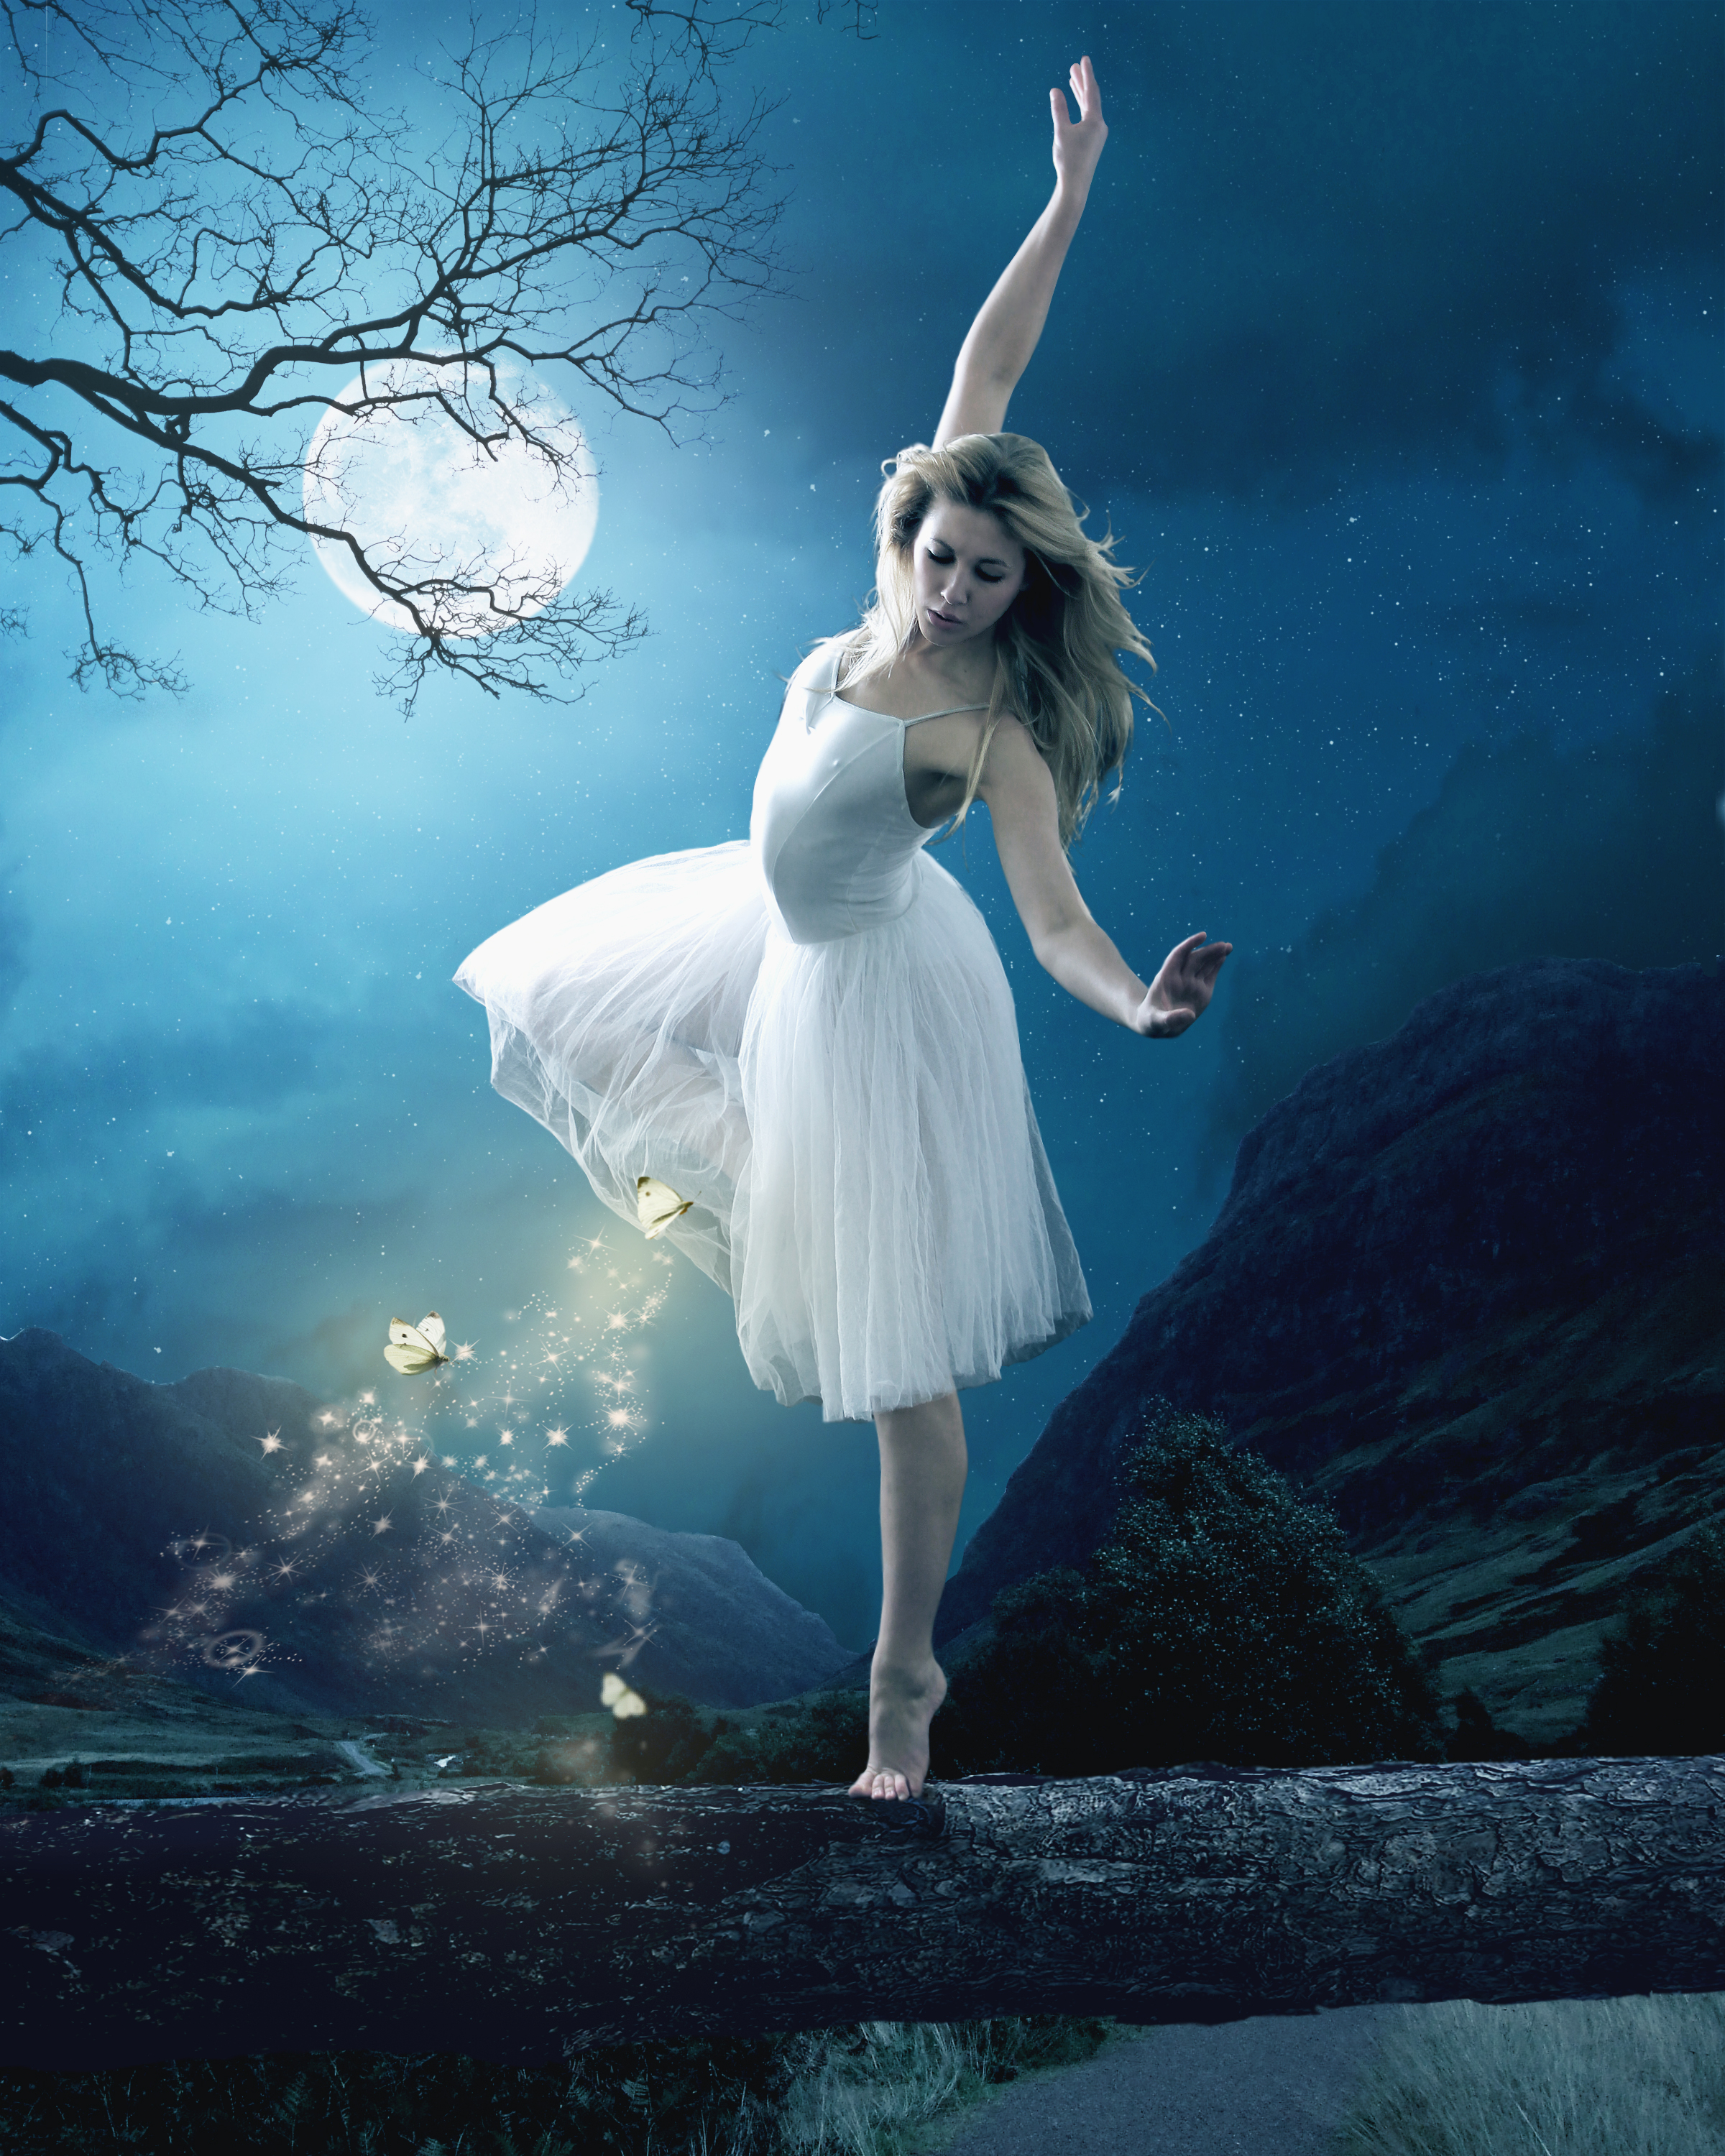 Вальс луна слушать. Девушка в воздушном платье. Лунный танец. Танцующая девушка. Танцующая под луной.